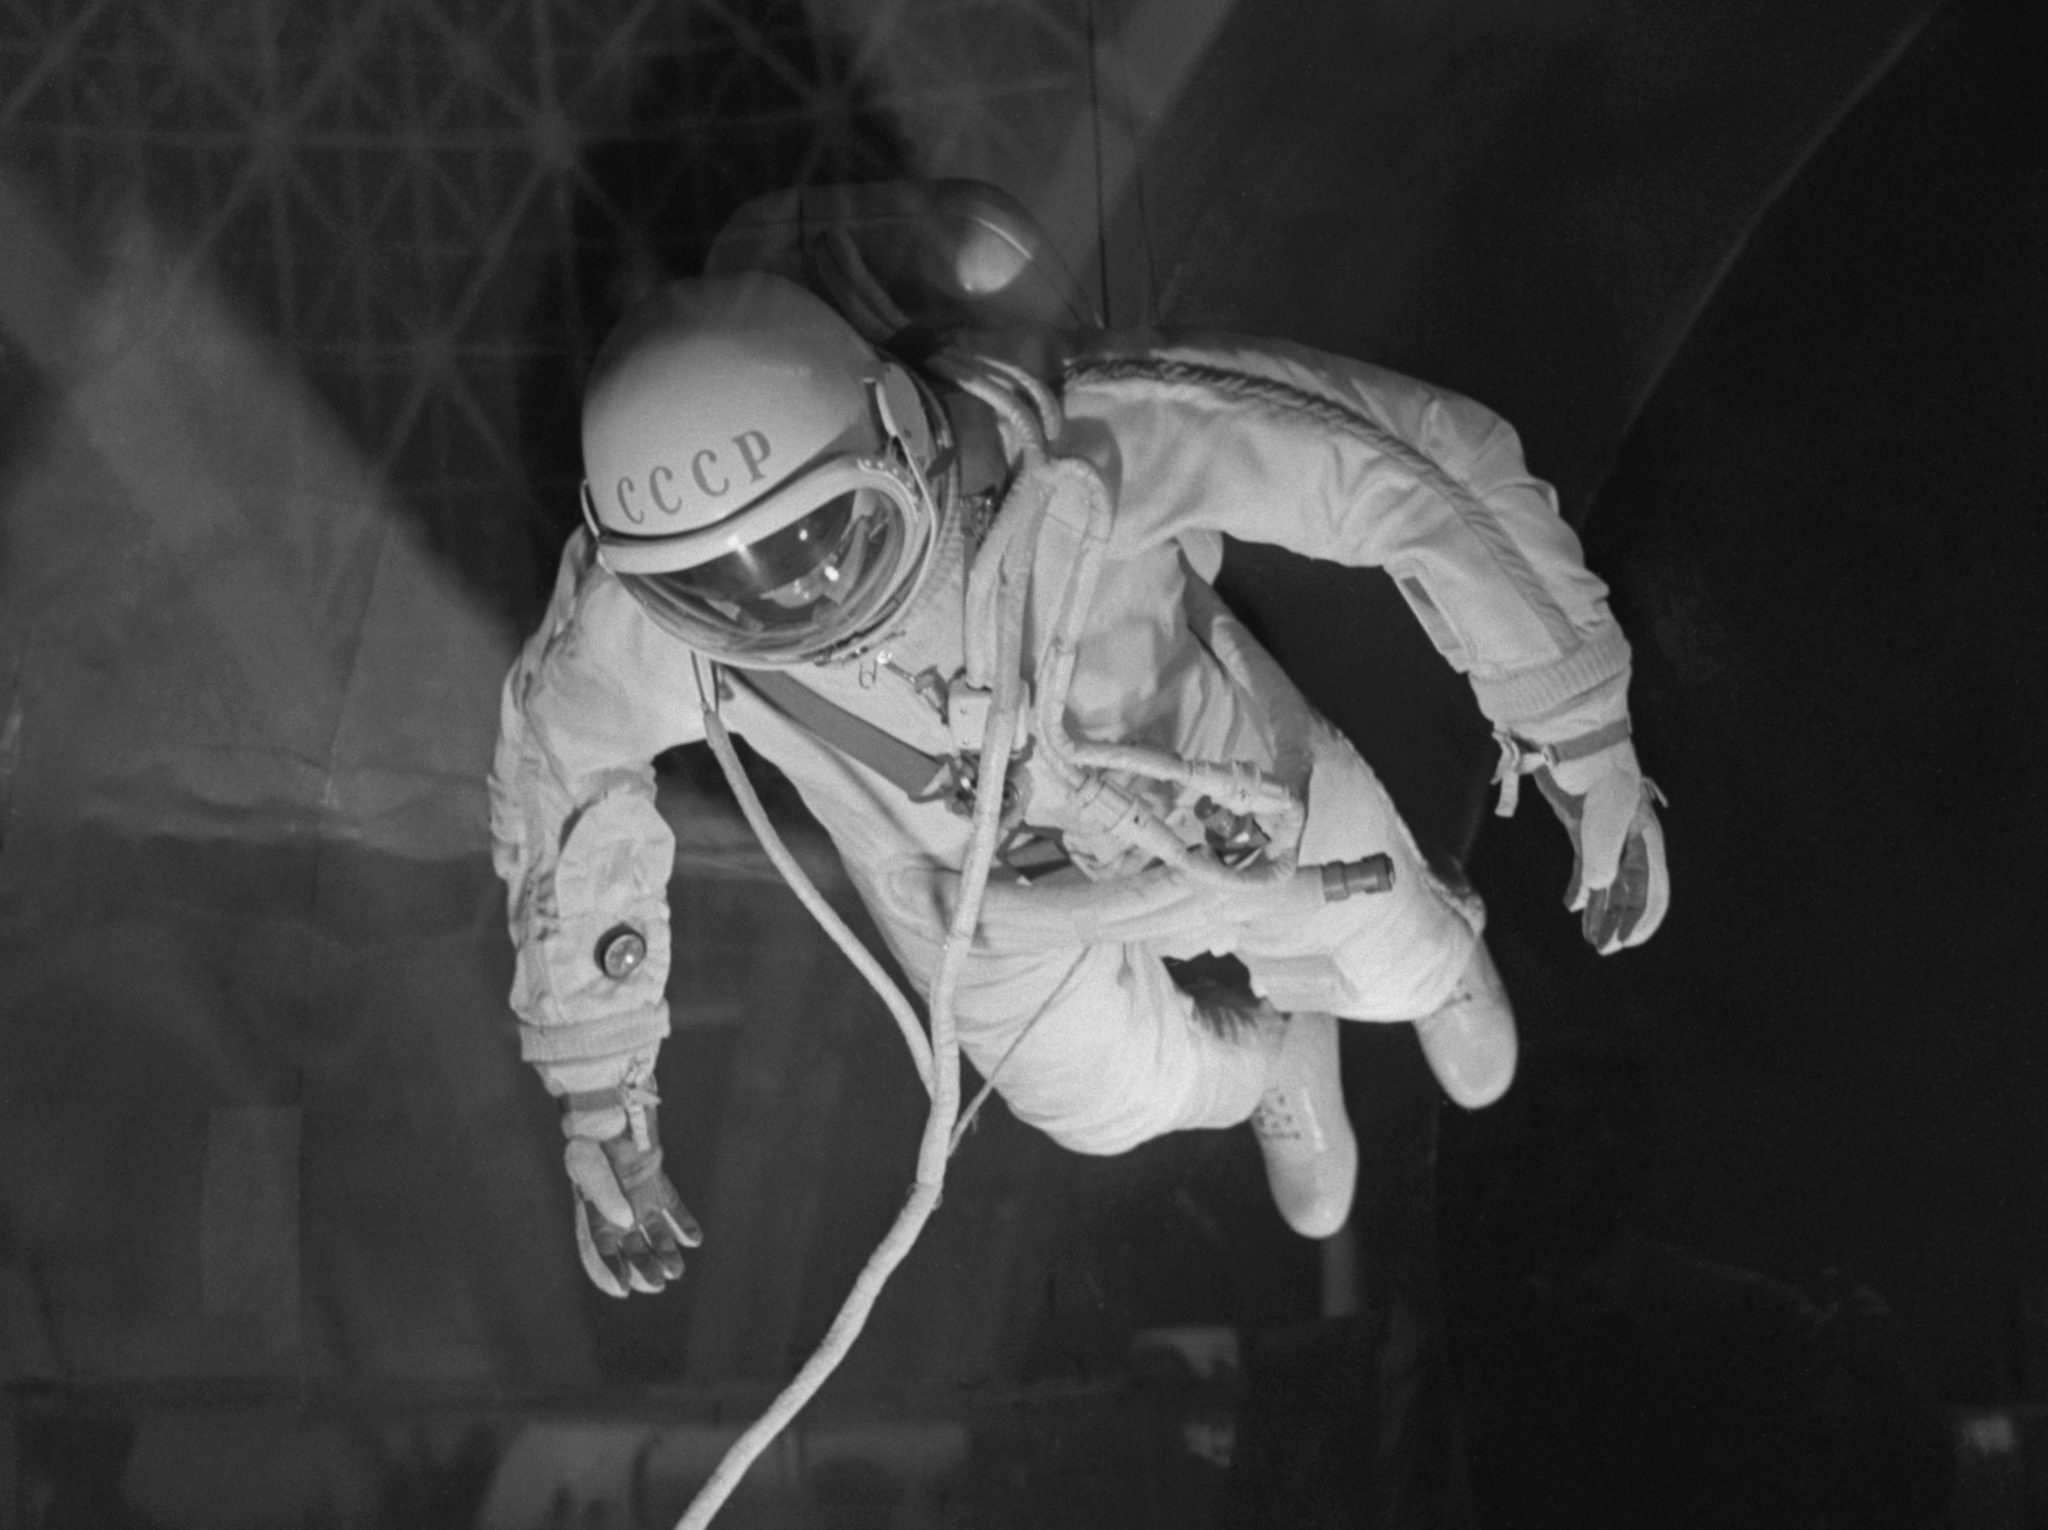 Первый астронавт вышедший в открытый космос. Леонов открытый космос. Леонов Афанасьев космонавт.